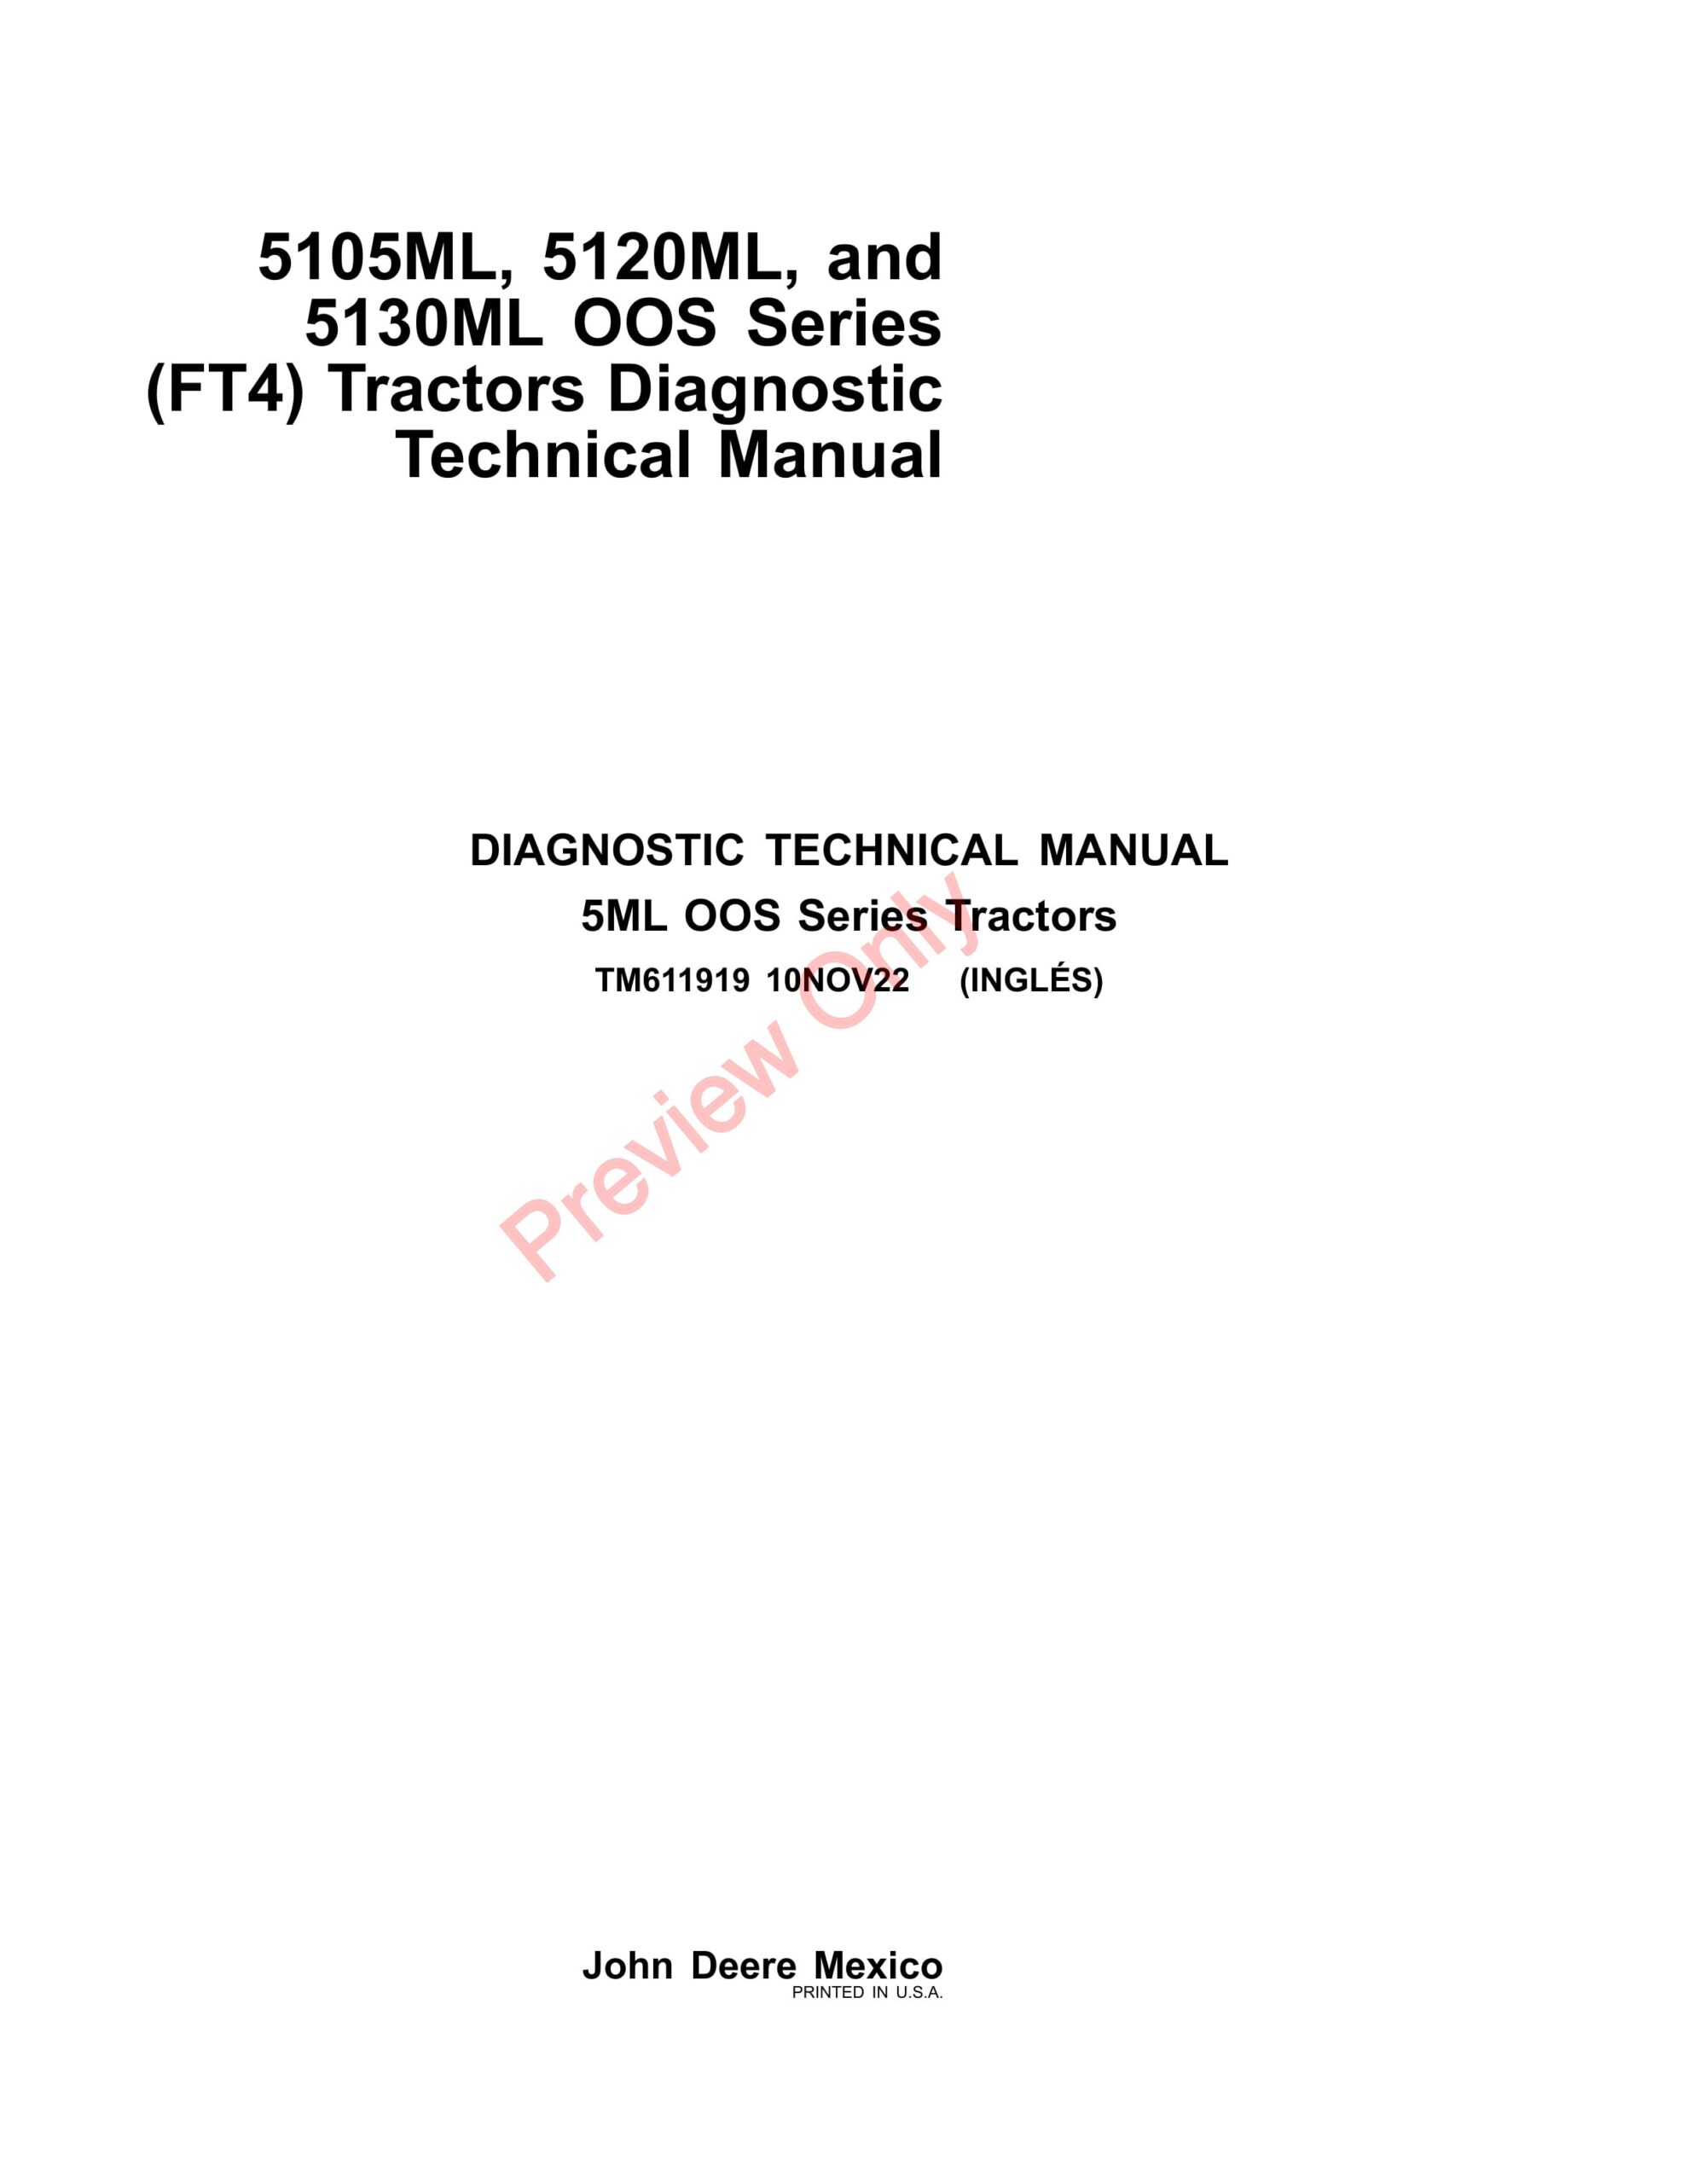 John Deere 5105ML, 5120ML, and 5130ML OOS Series (FT4) Tractors Technical Manual TM611919 10NOV22-1